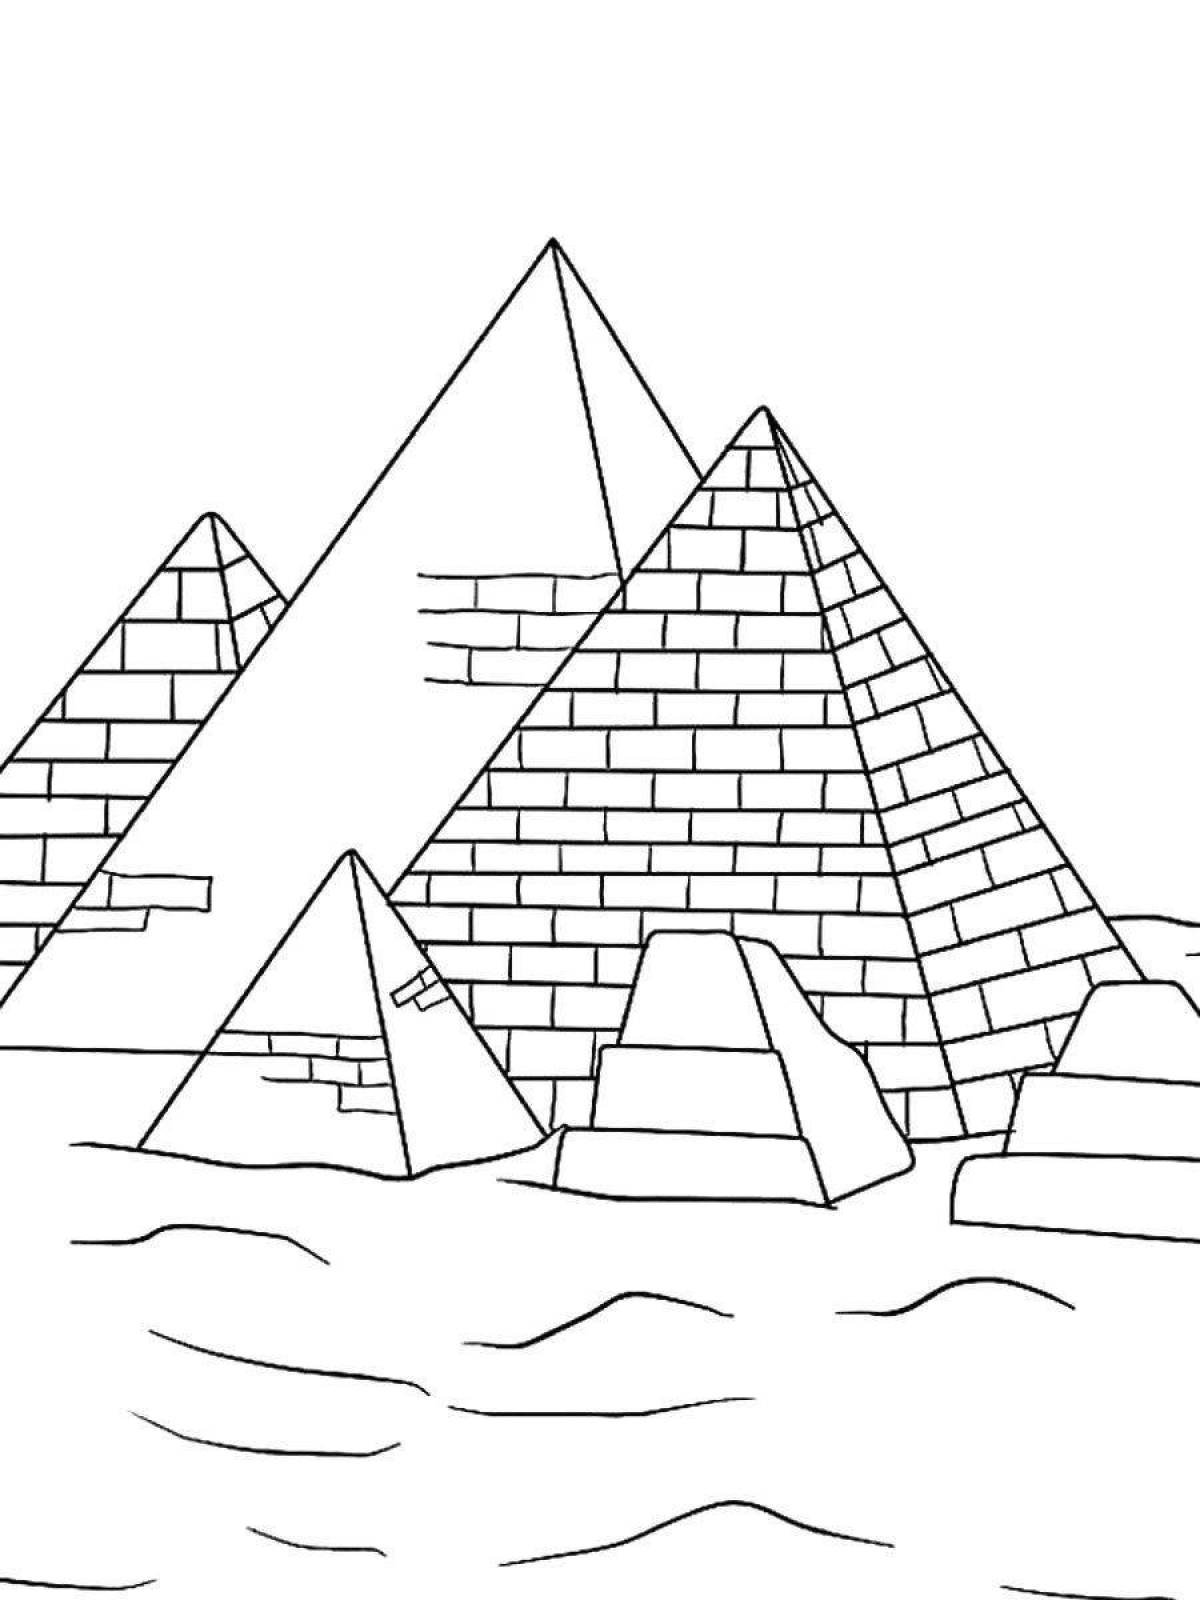 Рисунки древний мир 5 класс. Пирамида Хеопса древний Египет. Древний Египет пирамида Хеопса рисунок. Египет пирамида Хеопса для детей. Египет пирамида Хеопса набросок.